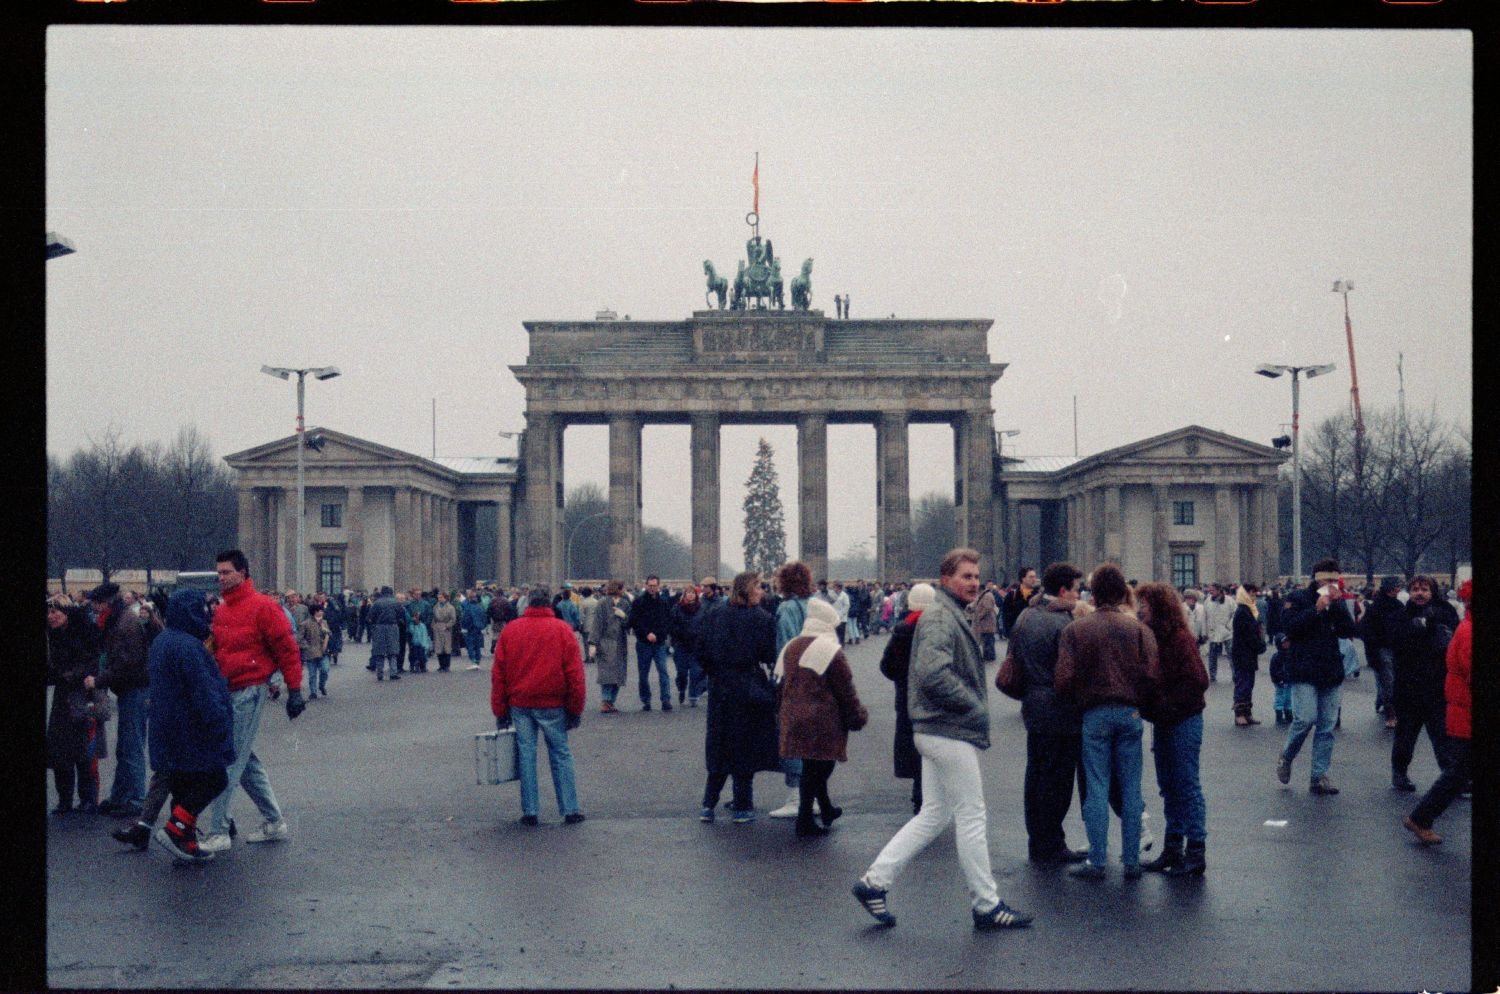 Fotografie: Erster Gesamt-Berliner Neujahrslauf 1990 in Berlin (AlliiertenMuseum/U.S. Army Photograph Public Domain Mark)